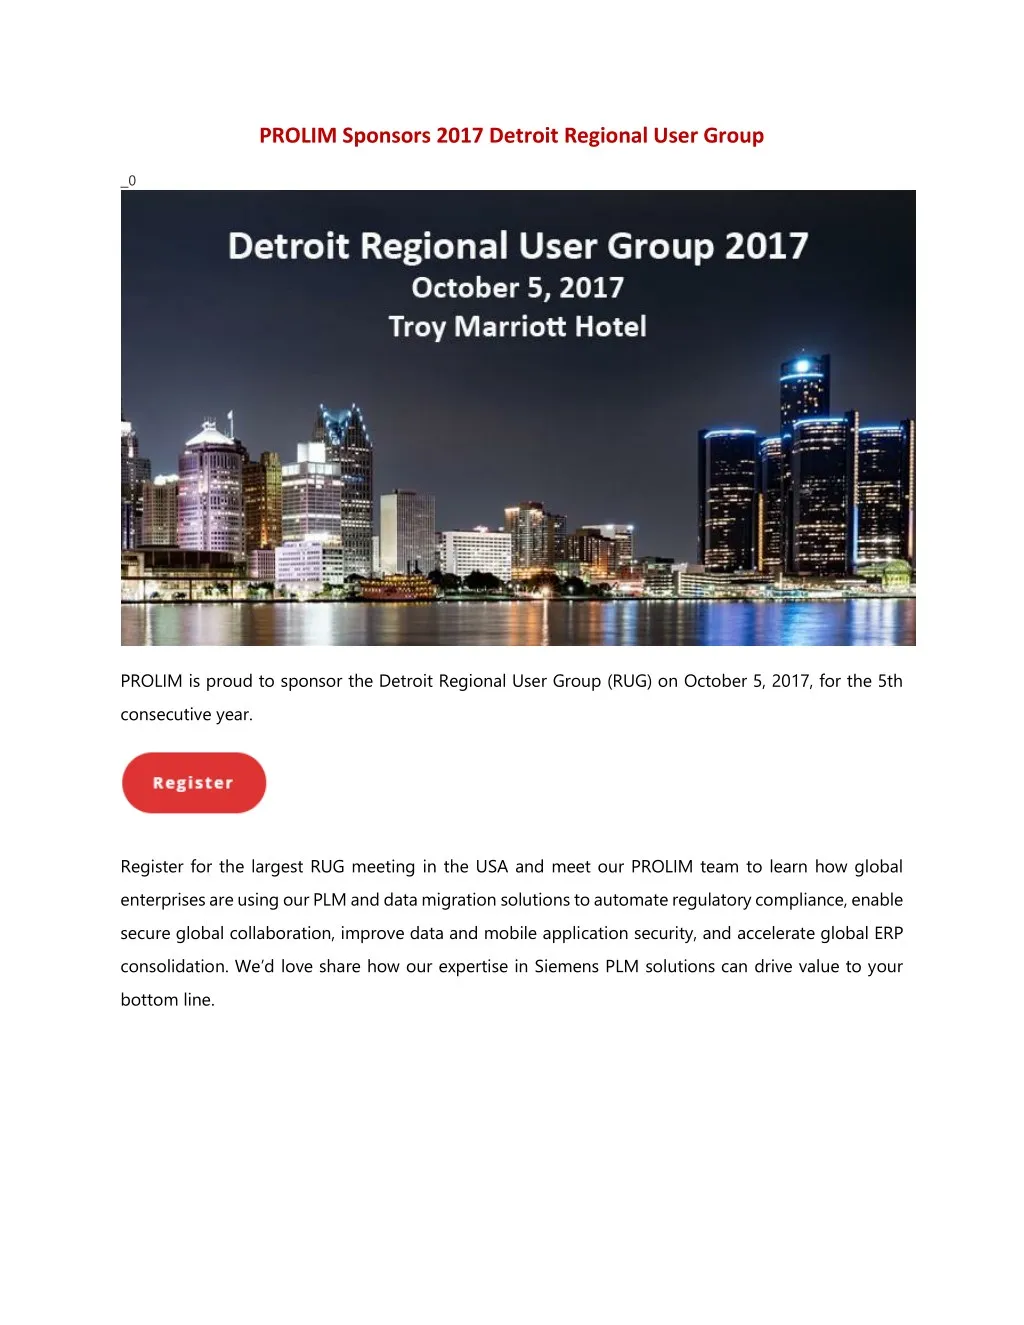 prolim sponsors 2017 detroit regional user group